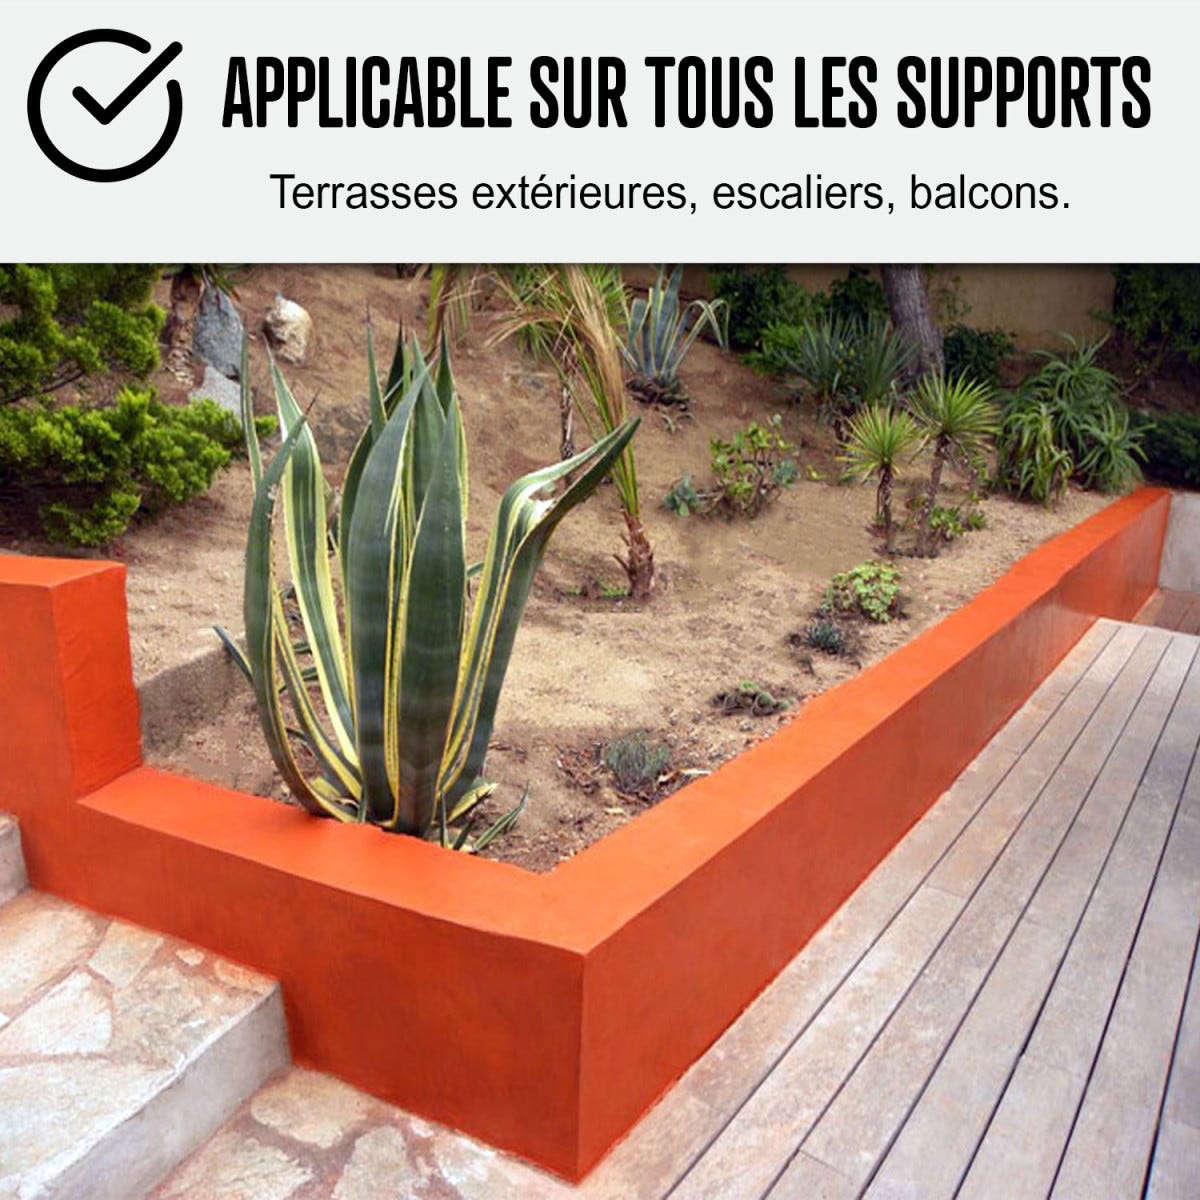 KIT BETON CIRE EXTERIEUR : Pour sol, mur, terrasse, balcon, escalier - 5 m² (en 2 couches) - Melon Orange - ARCANE INDUSTRIES 4